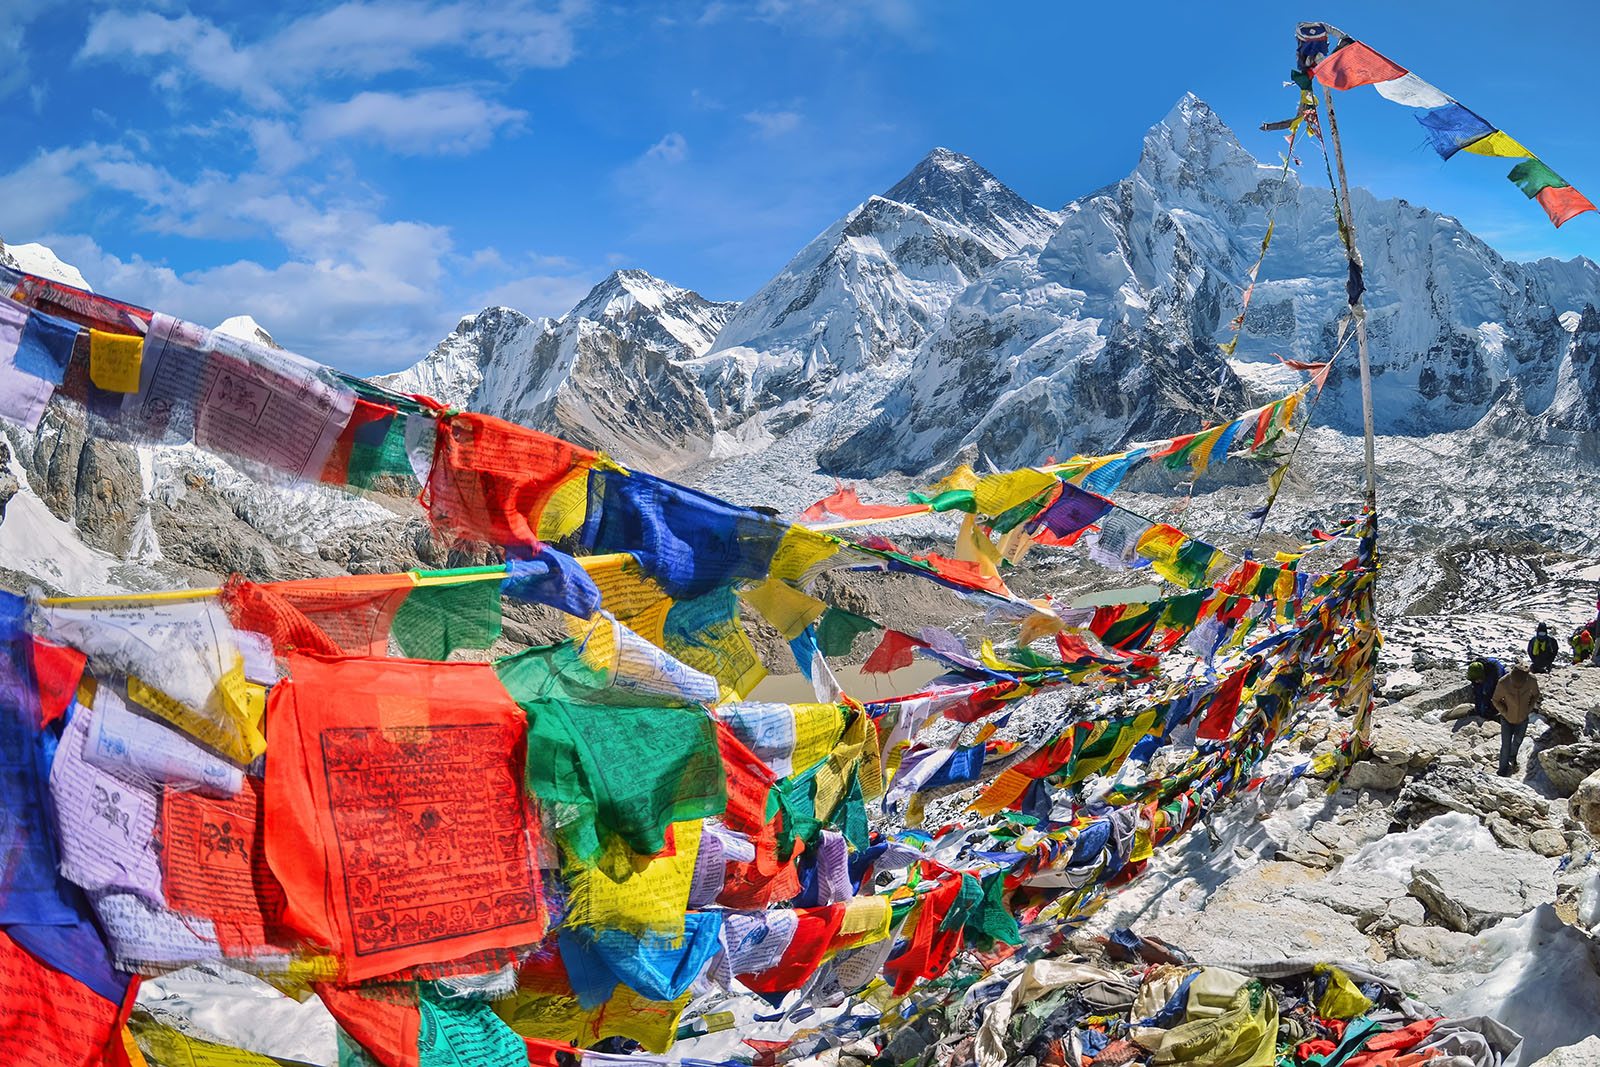 Los sherpas proponen al gobierno nepalí aprovechar el “cierre del Everest” para limpiarlo